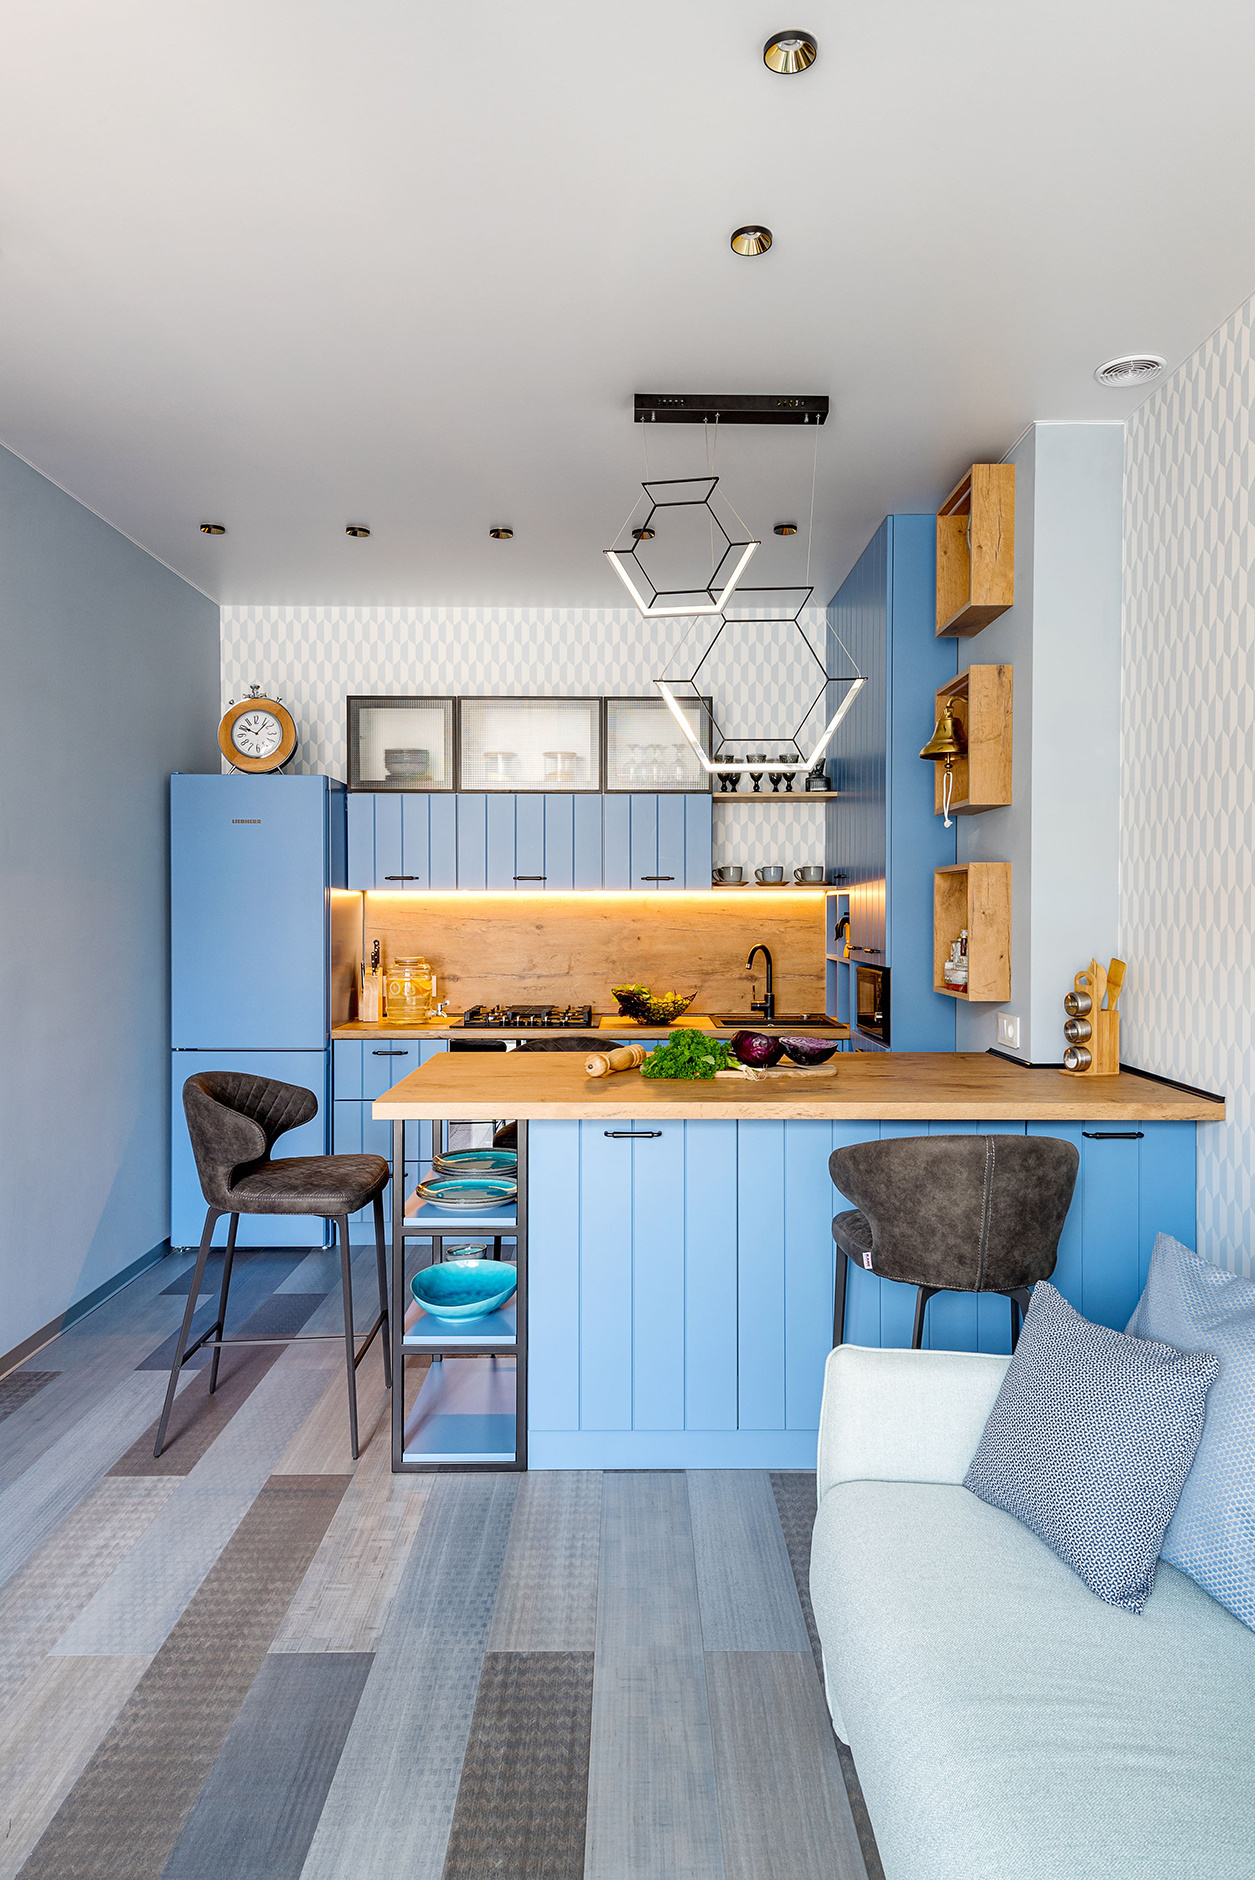 Phòng bếp này nằm trong căn hộ do nhà thiết kế Victoria Lazareva thực hiện, với tủ lưu trữ 3 ngăn mặt kính trong suốt, bố trí phía trên cùng của hệ thống tủ bếp màu xanh lam, tạo nên một cảm giác nhẹ nhàng, tươi sáng cho không gian nấu nướng.